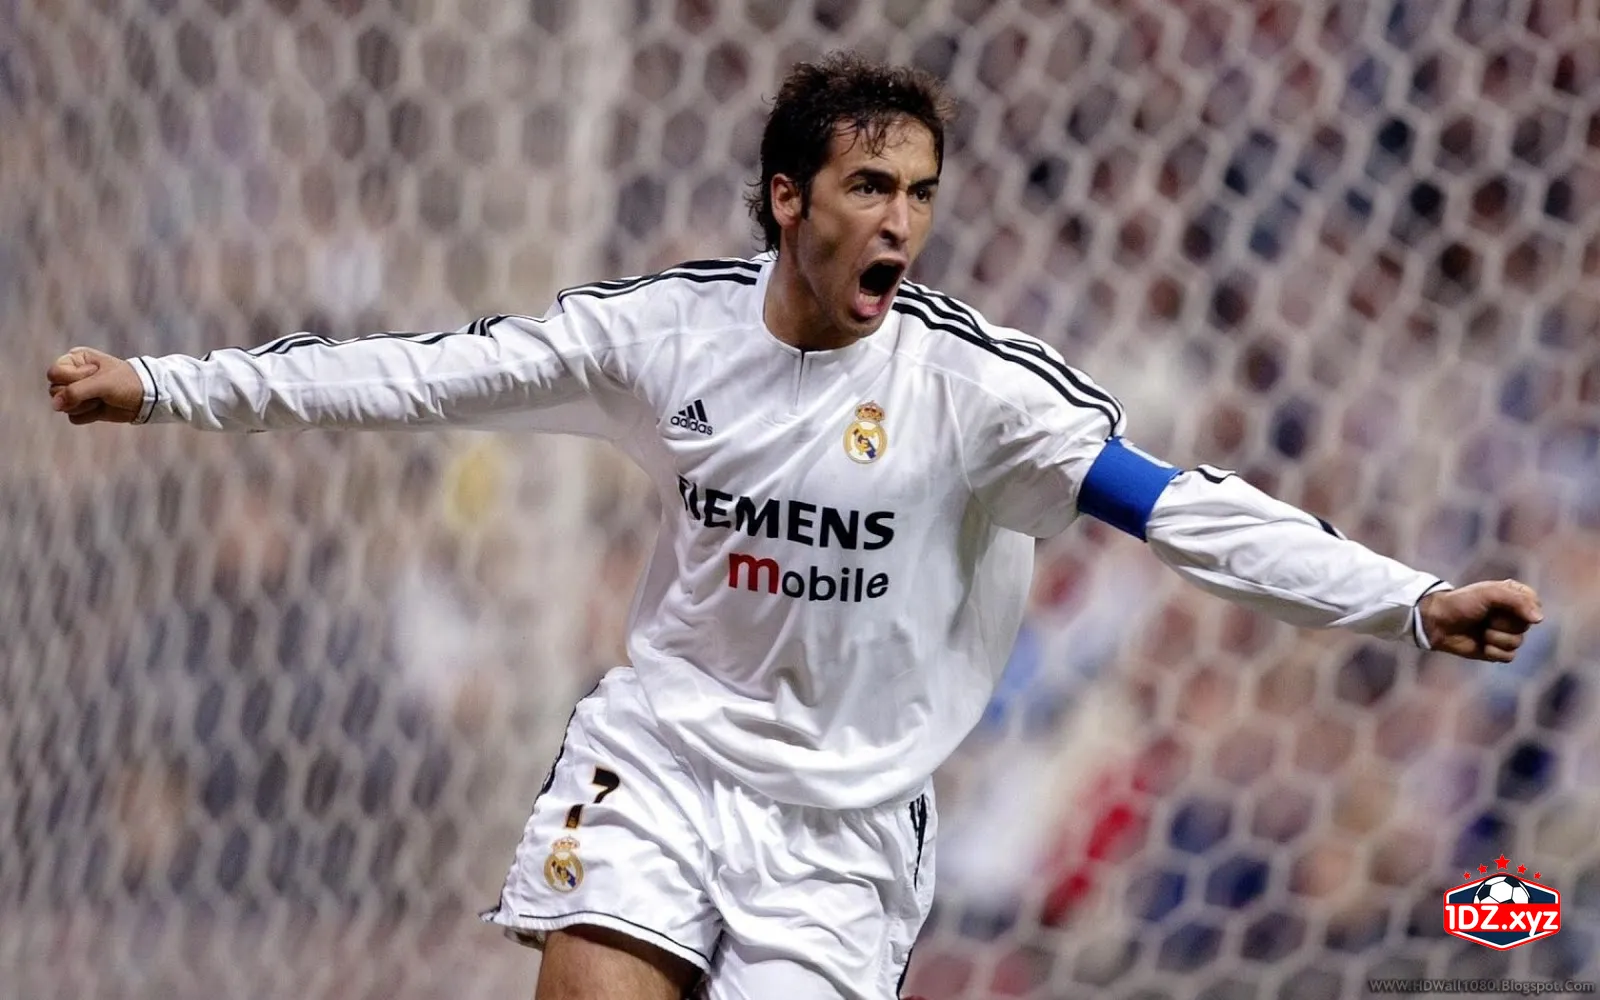 Raul Gonzalez – Cầu thủ ghi bàn nhiều nhất La Liga: 228 bàn